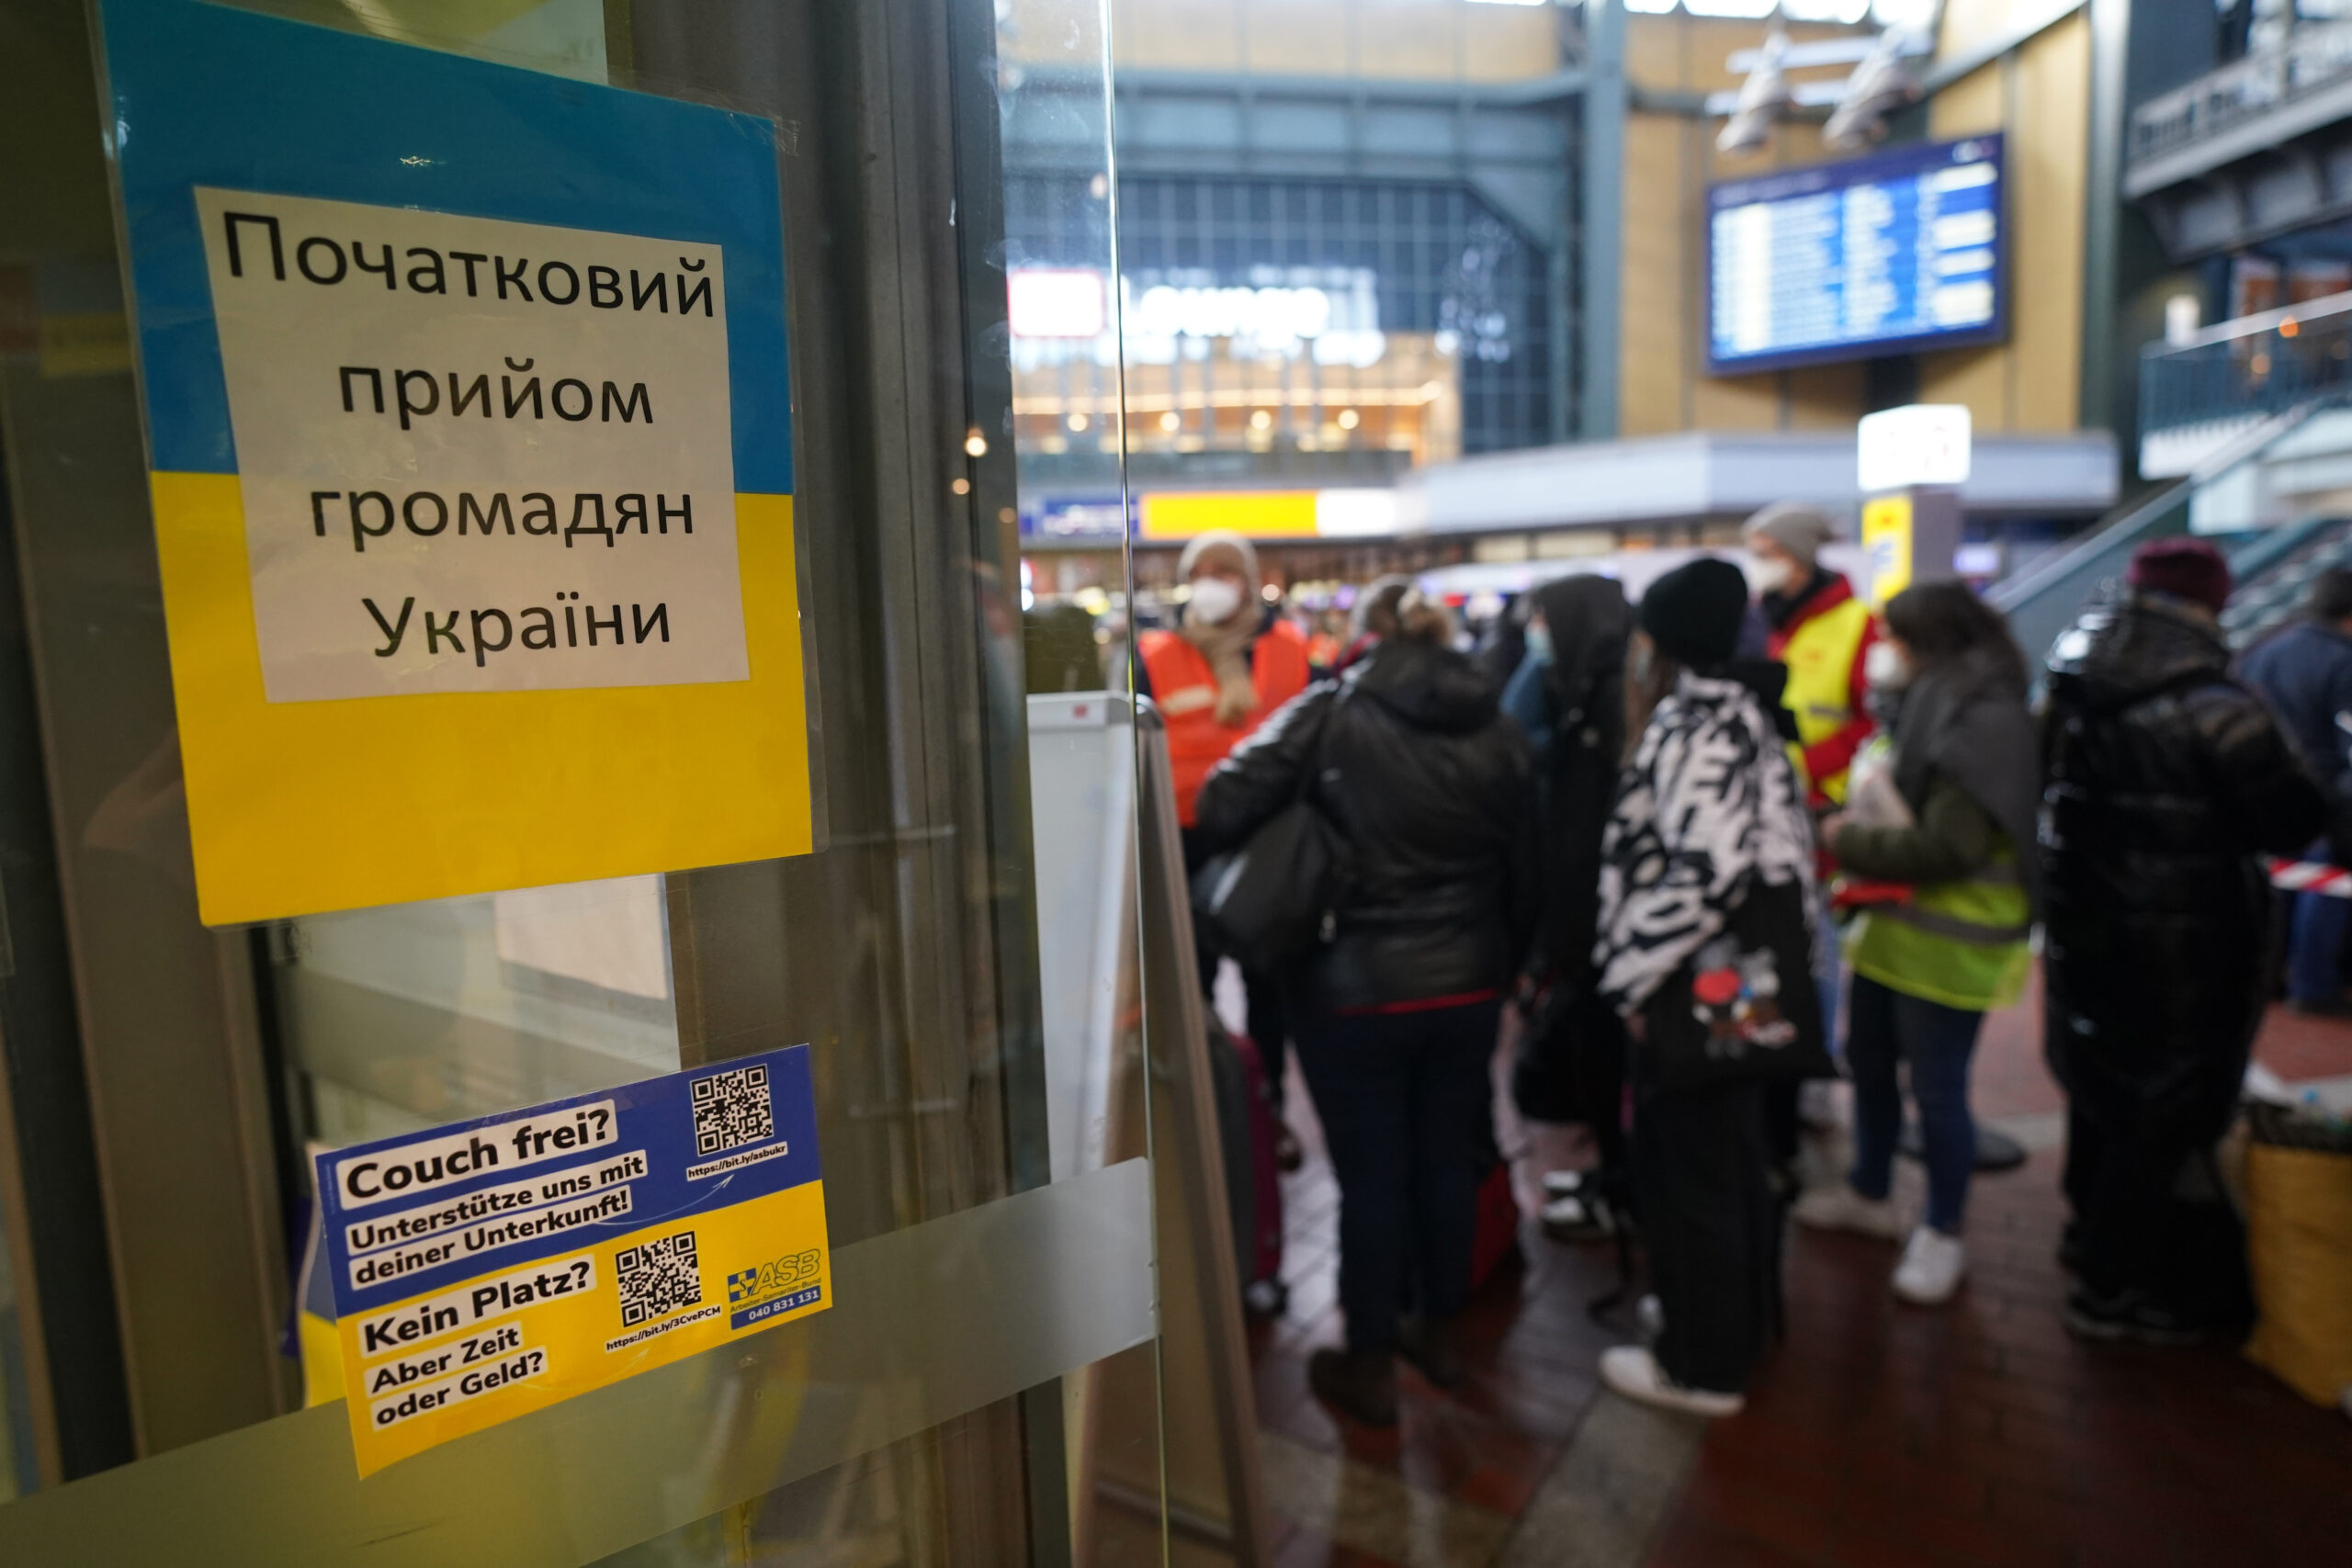 Ukrainische Flüchtlinge sprechen nach ihrer Ankunft am Hauptbahnhof mit Helfern des Arbeiter-Samariter-Bundes (ASB).